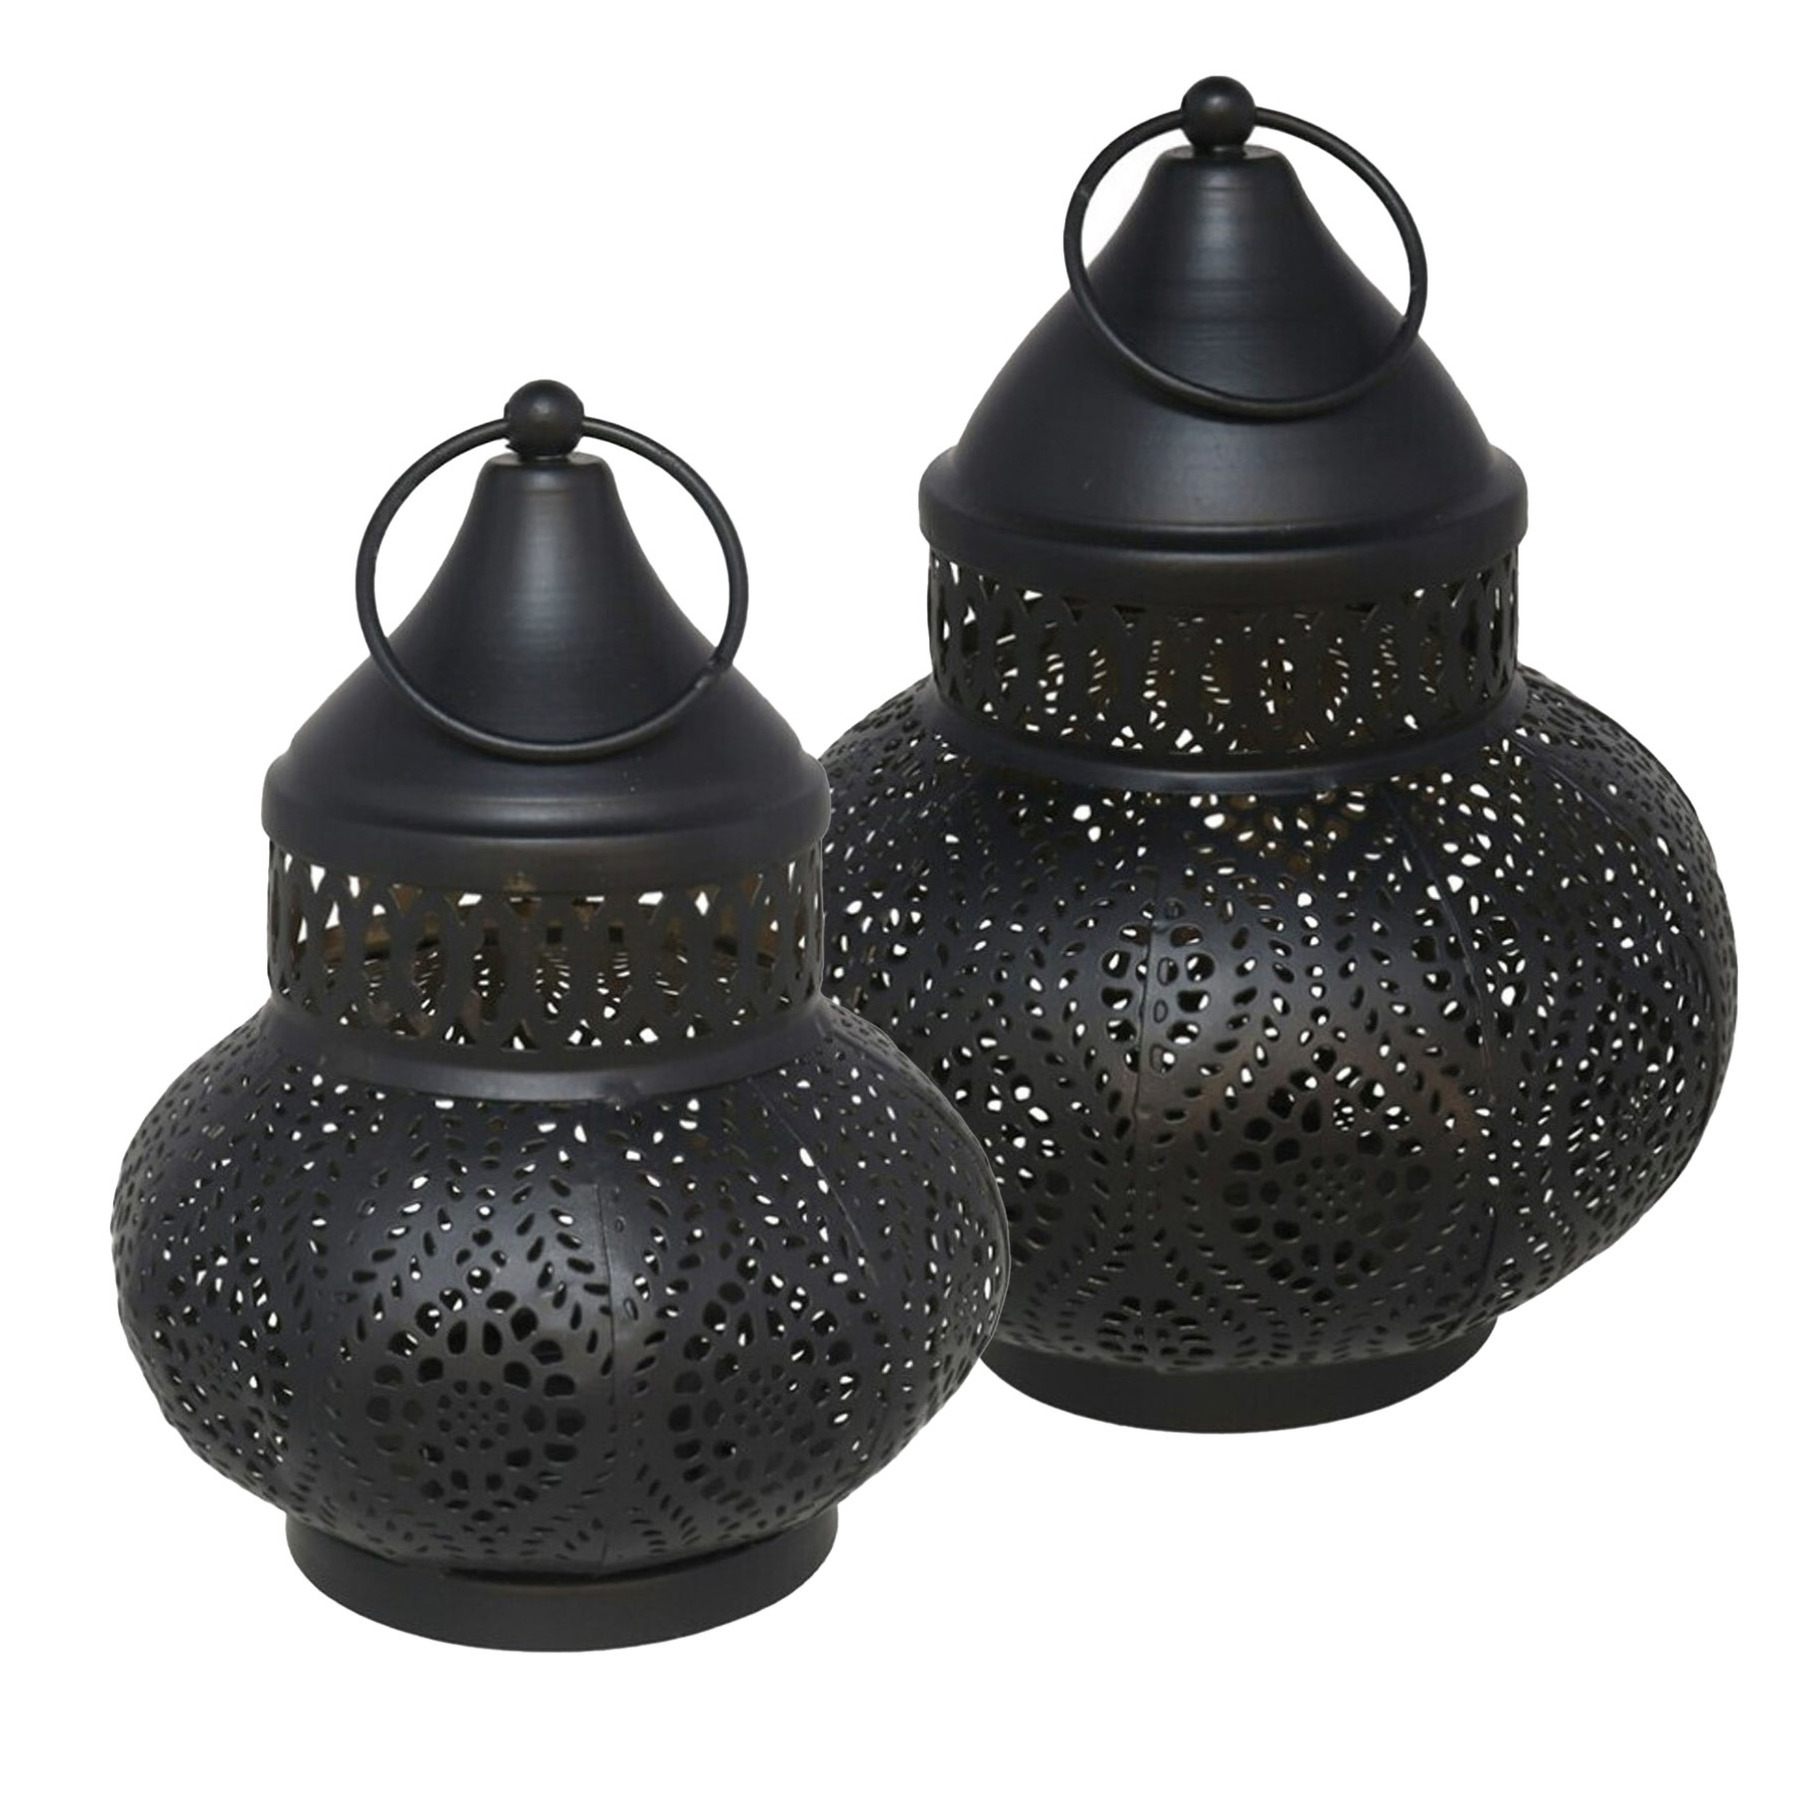 Tuin deco lantaarns set van 2 - Marokkaanse sfeer - zwart/goud - metaal - buitenverlichting -